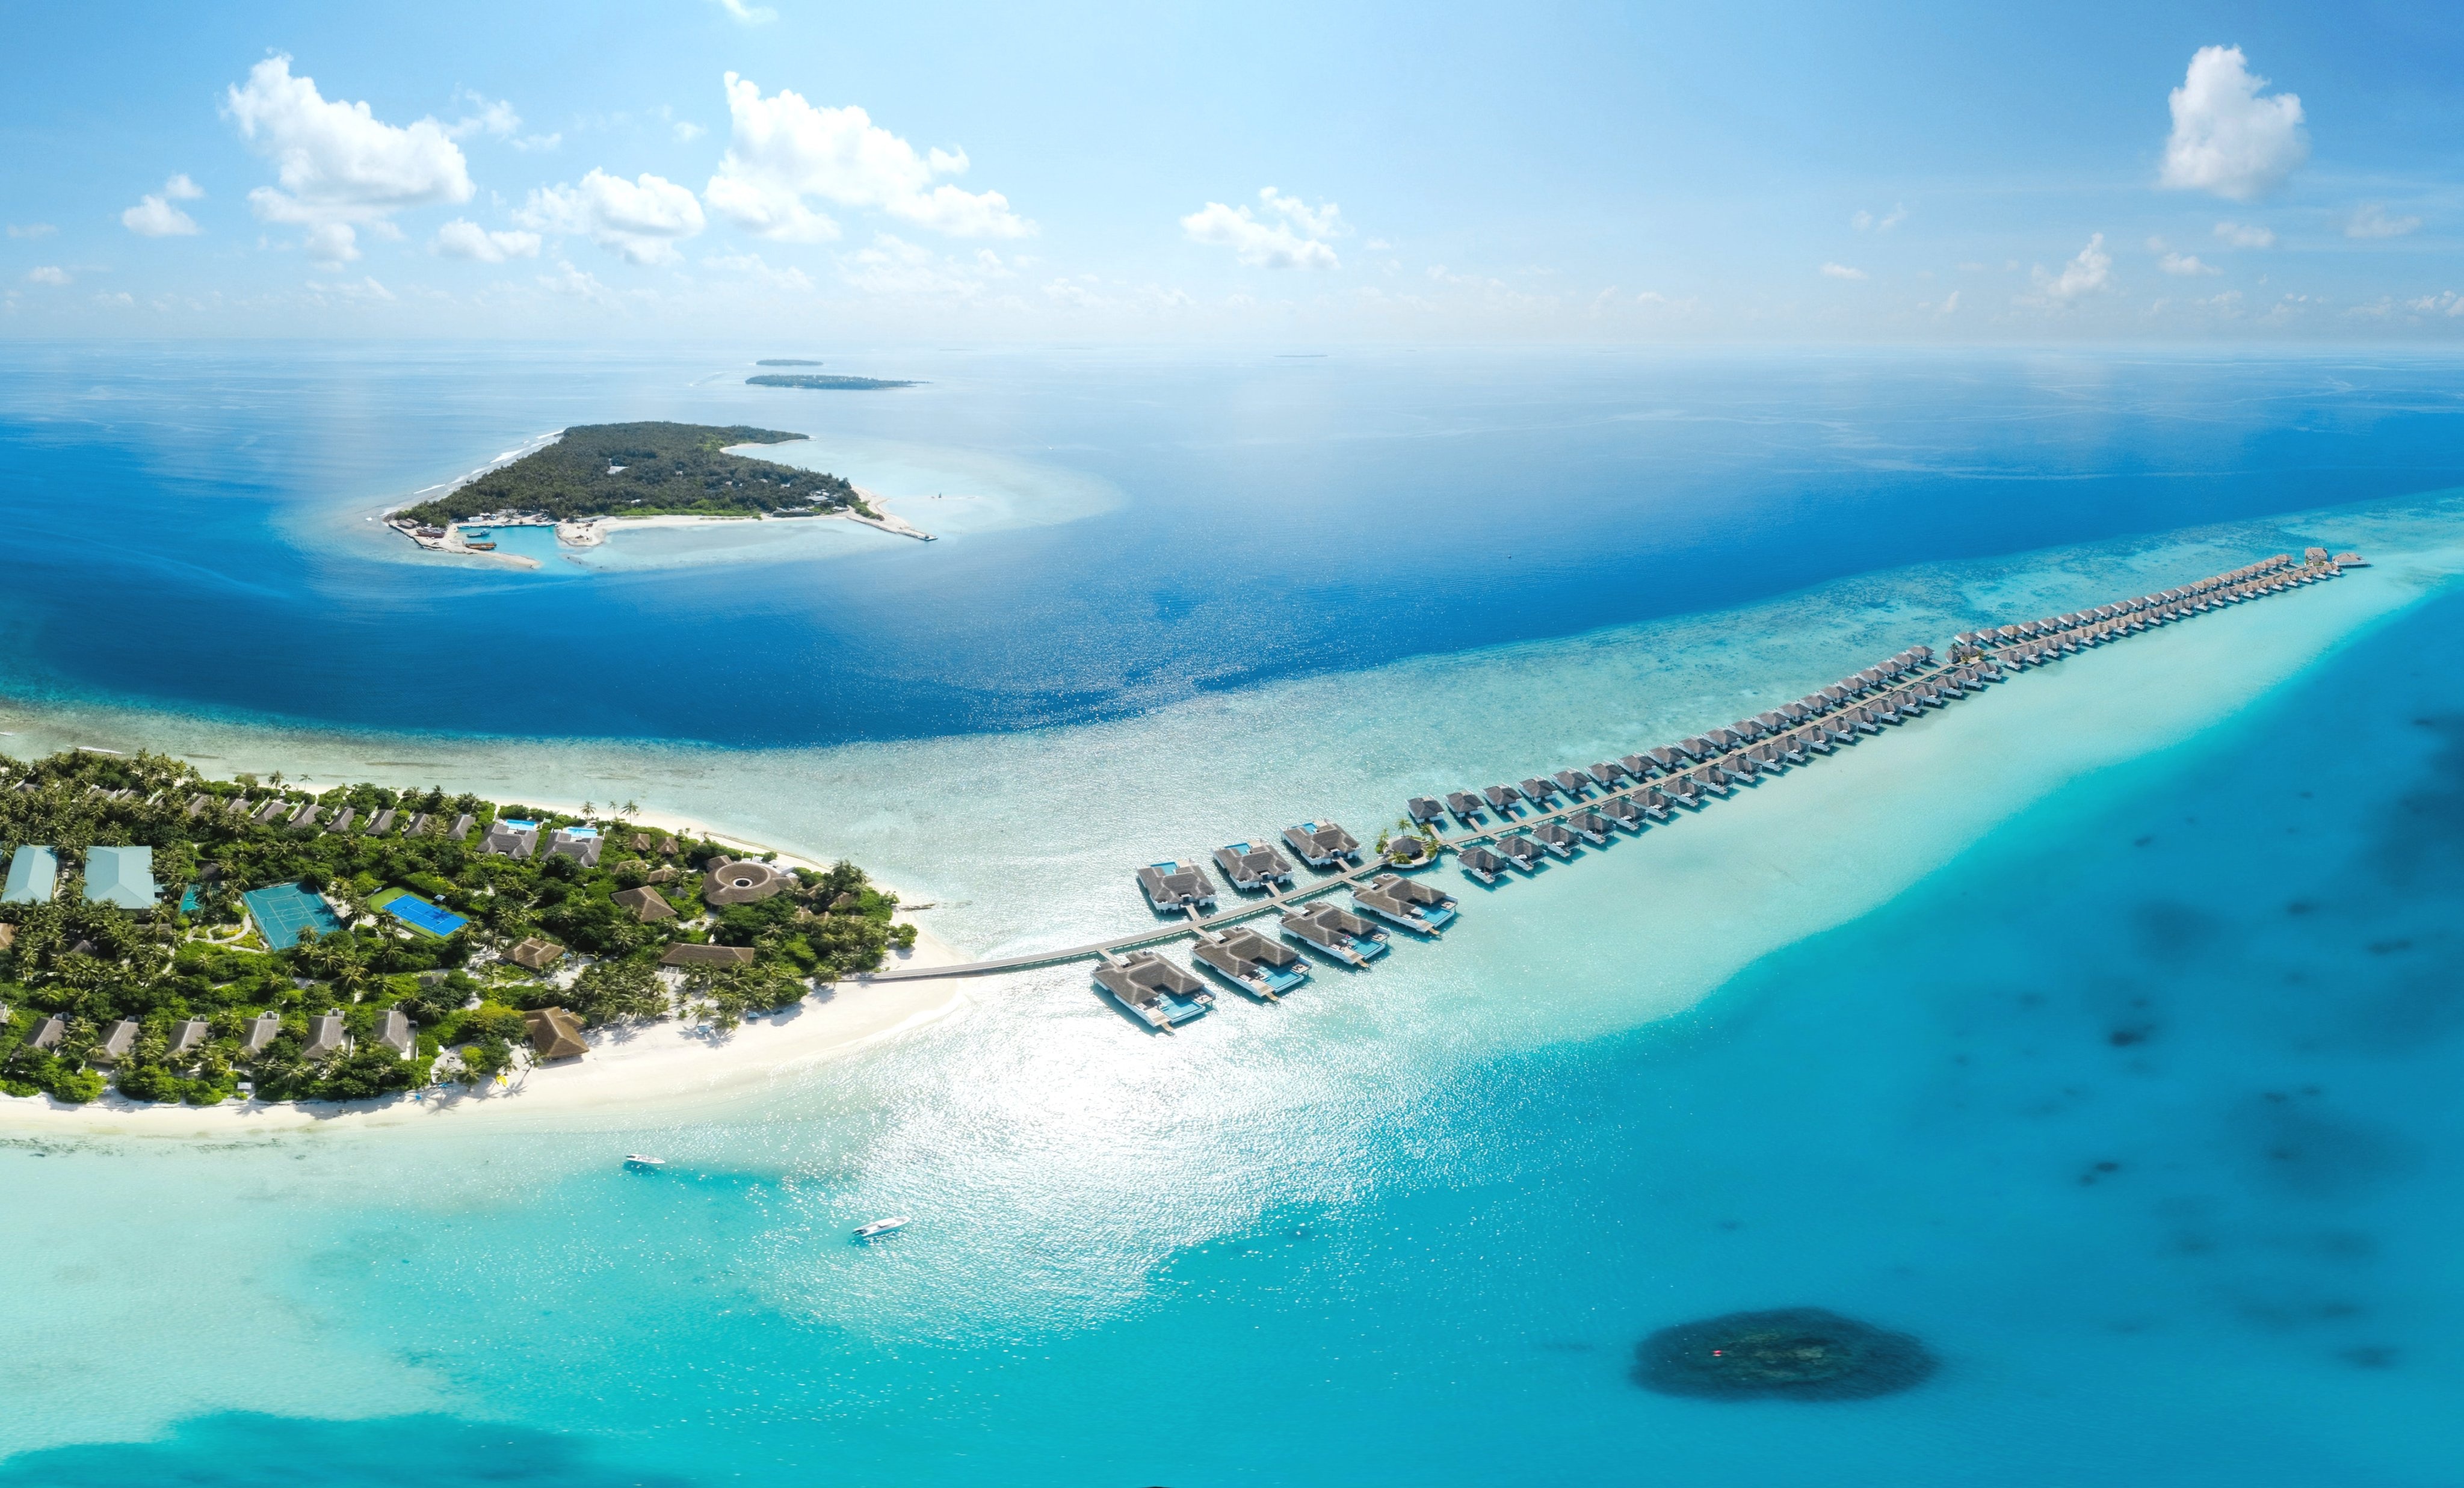 Vẻ đẹp của Maldives gợi nhắc tới đảo ngọc Phú Quốc - nơi các khách mời Sun Red Carpet đang sở hữu những bất động sản mang thương hiệu Sun Property.  - anh_3 - Trải nghiệm Maldives bằng chuyên cơ hạng sang